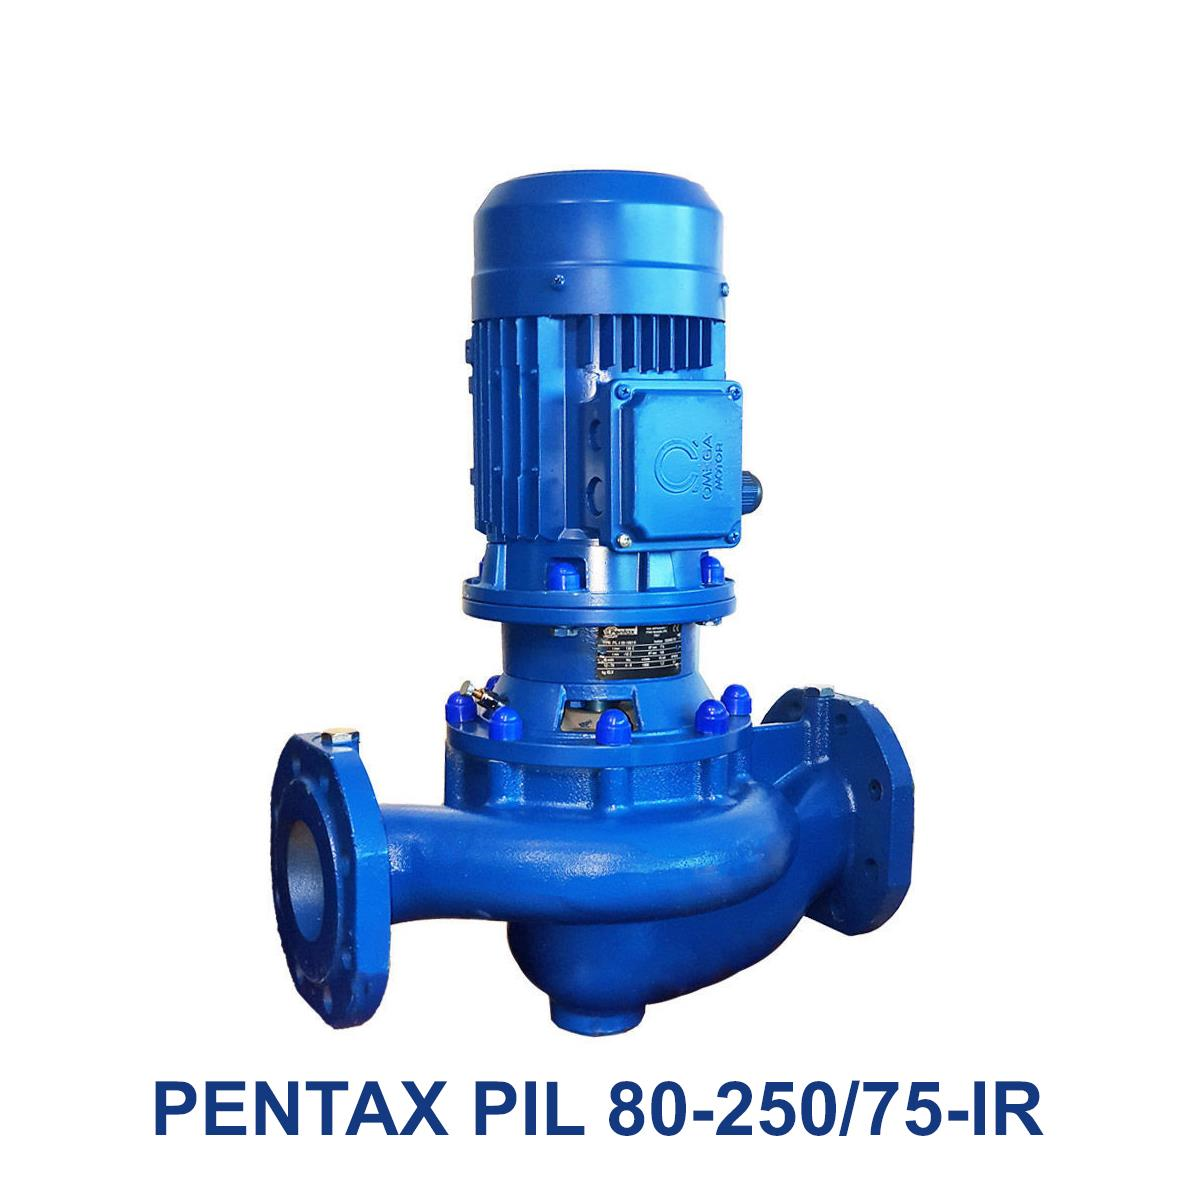 PENTAX-PIL-80-250-75-IR